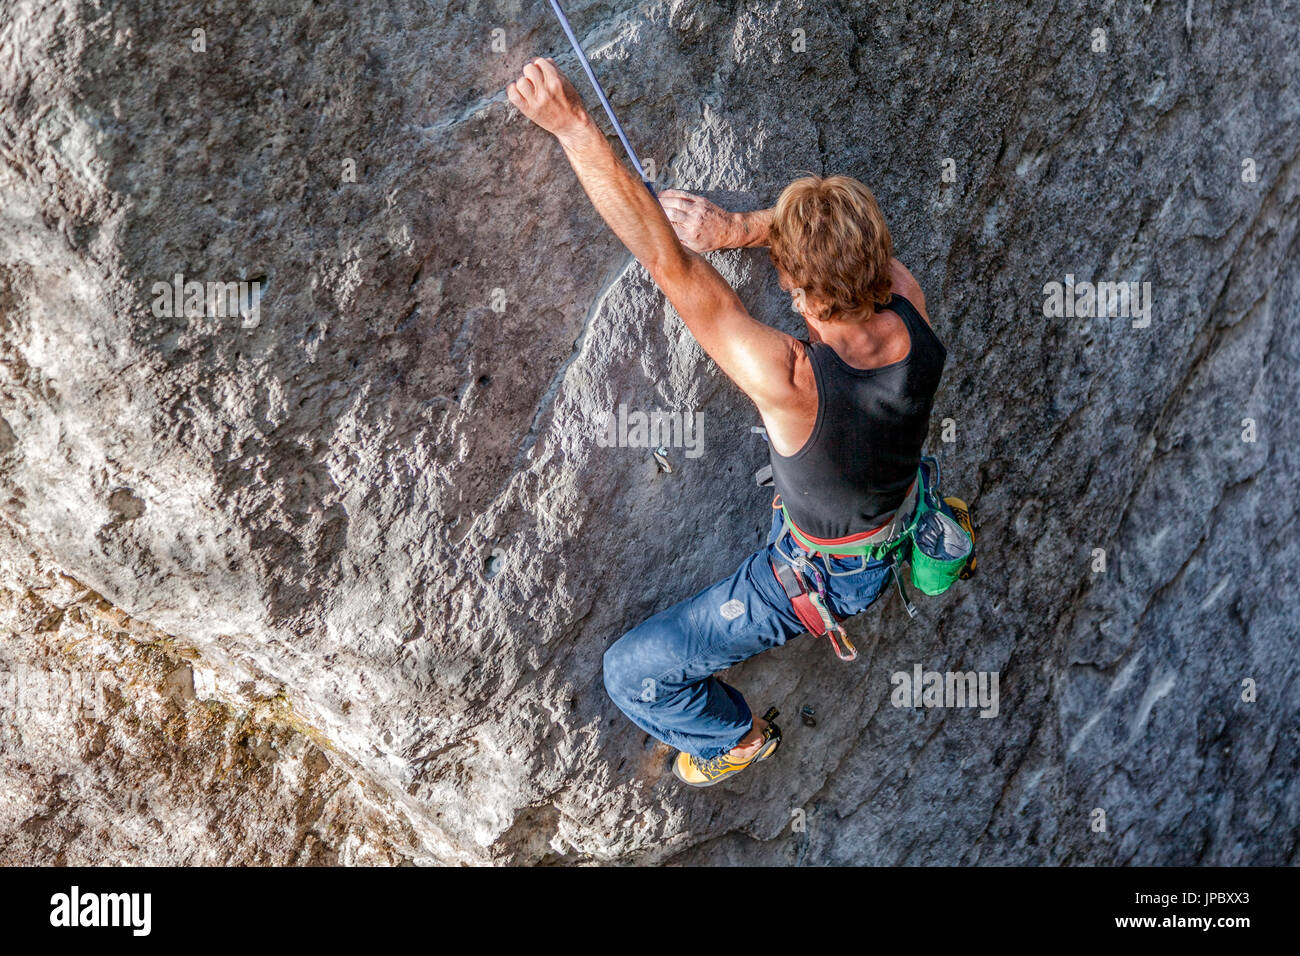 Freeclimbing, Klettern in natürlichen Felsen. Kletterer in Aktion auf einem Felsenweg ausgestattet. Gares, Dolomiten, Veneto, Italien Stockfoto